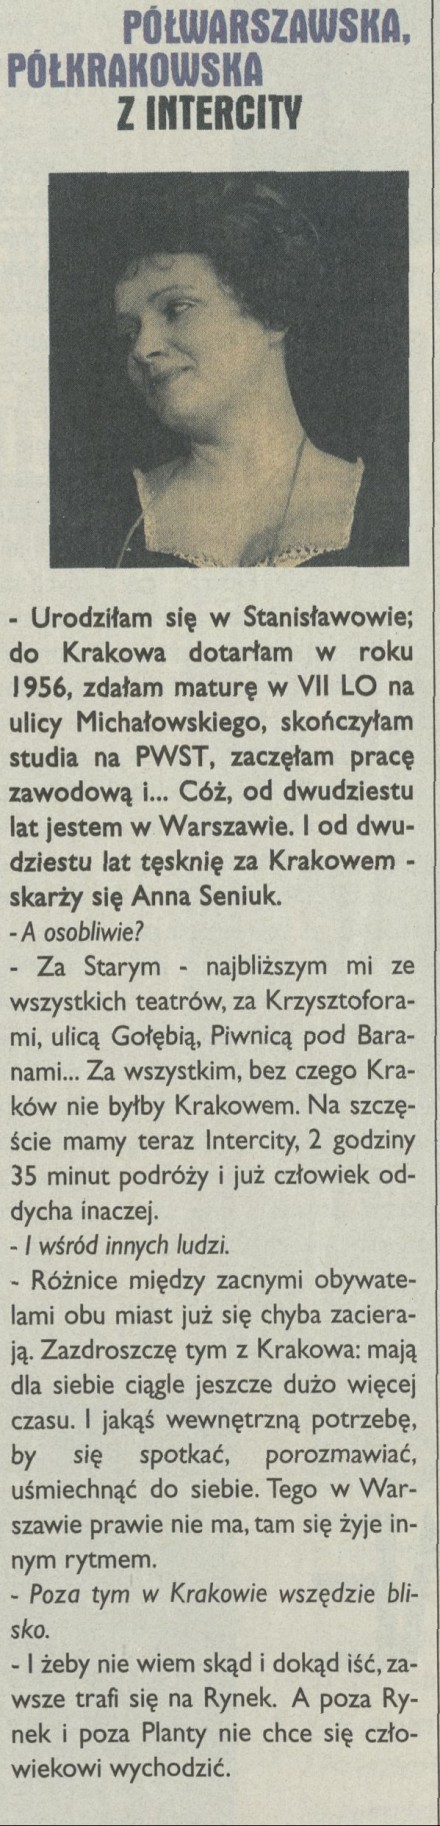 Półwarszawska półkrakowska z intercity